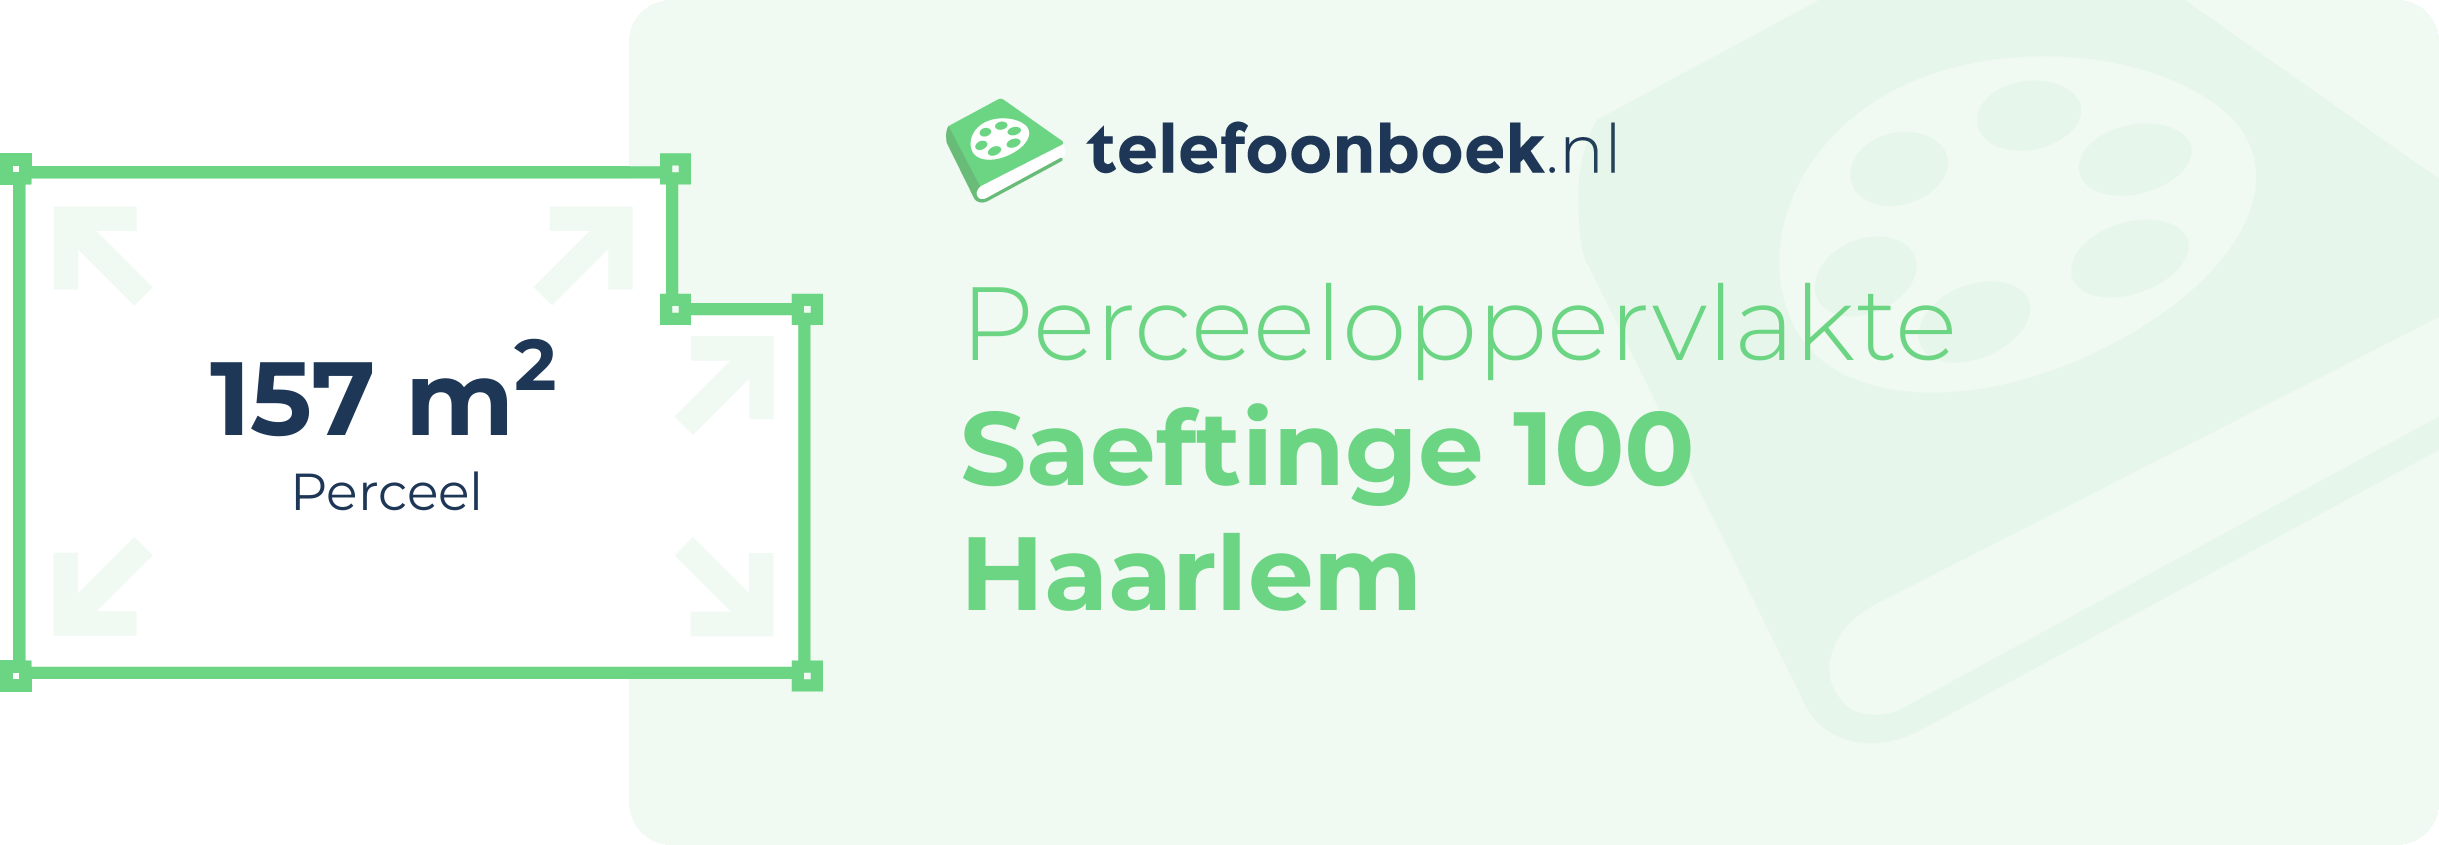 Perceeloppervlakte Saeftinge 100 Haarlem